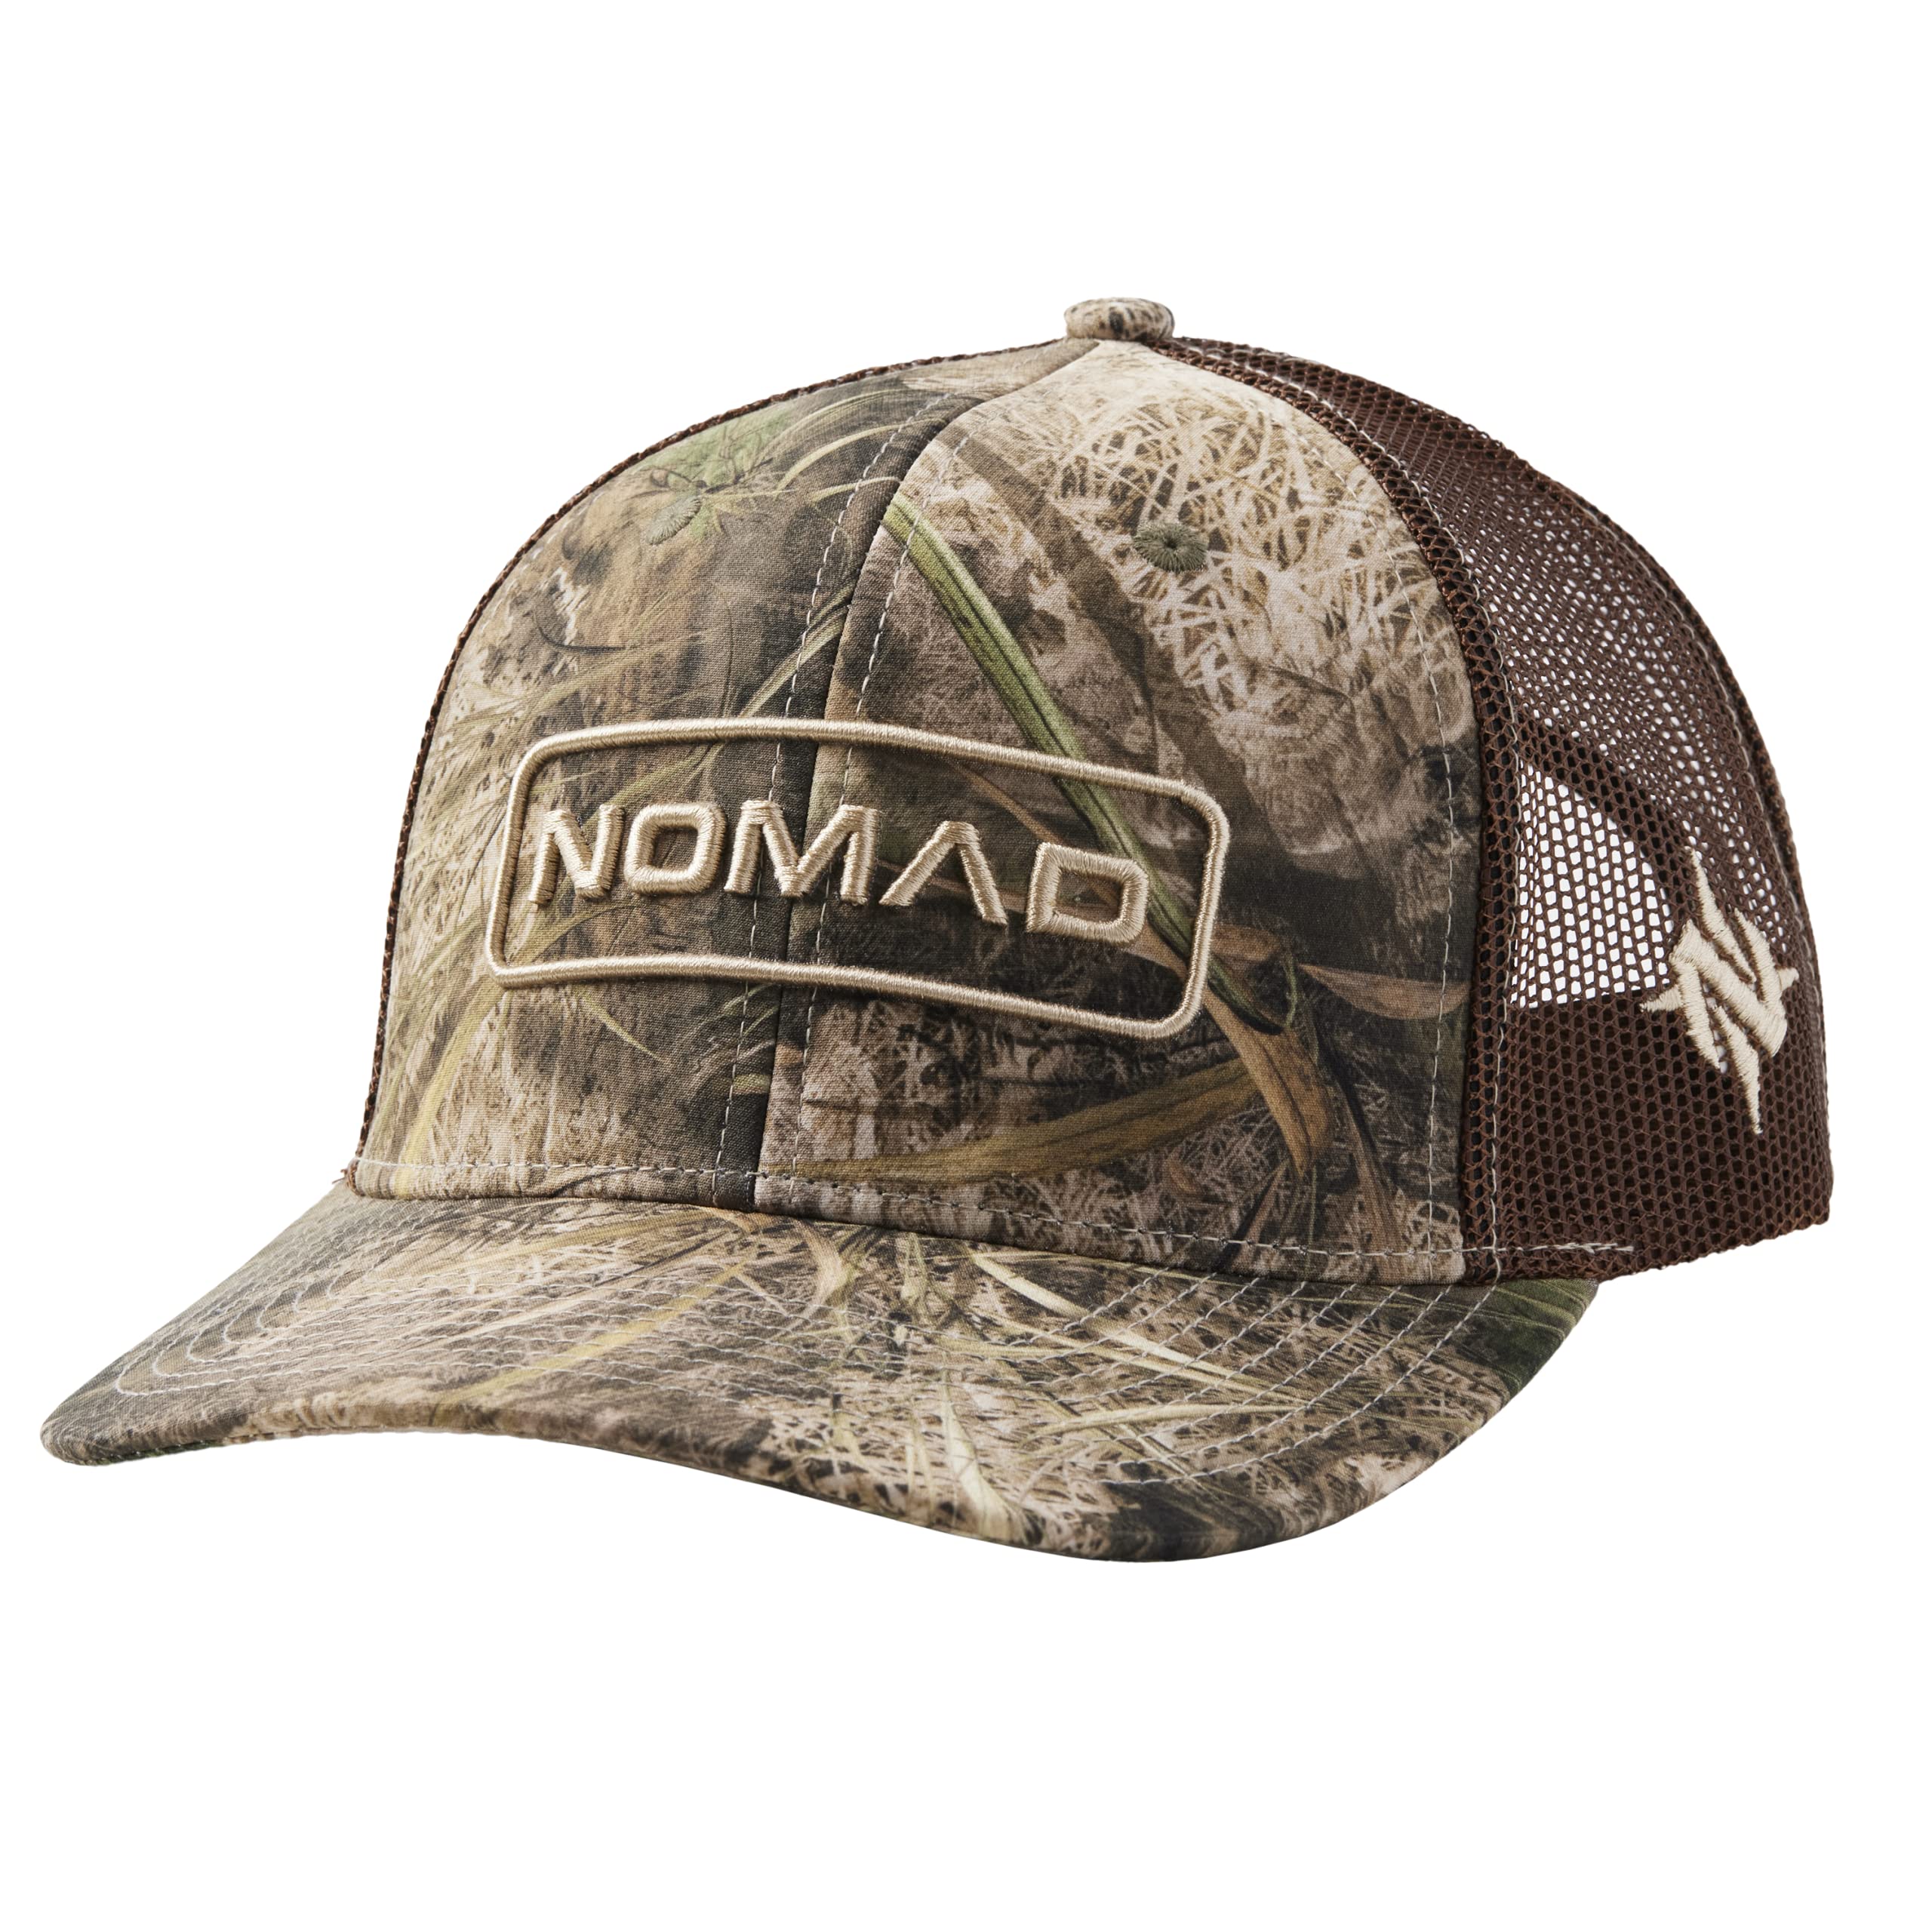 Nomad Men's Trucker Adjustable Mesh Hunting Snap Back Hat